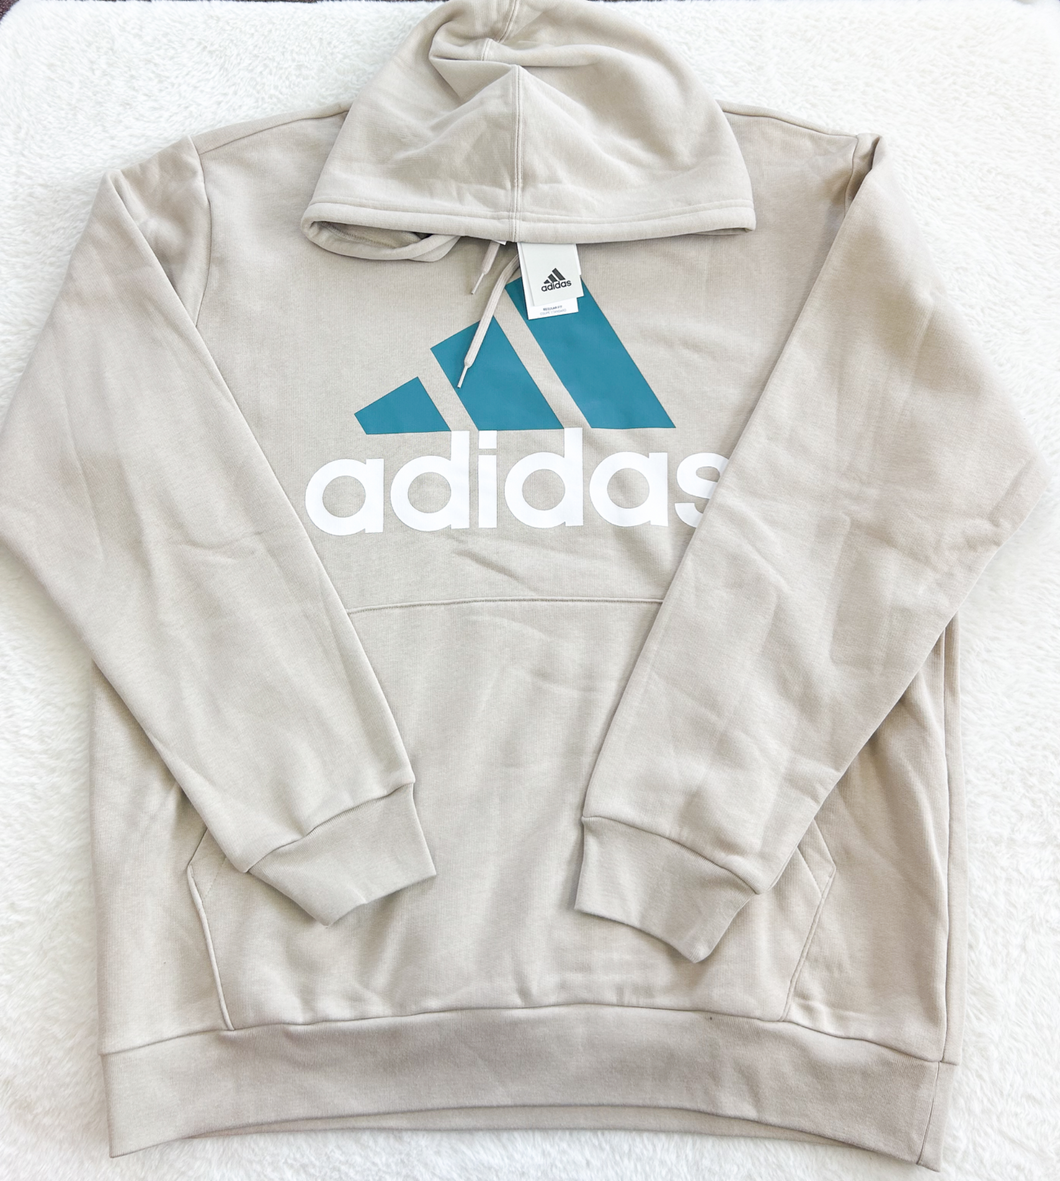 Adidas Sweatshirt Size Extra Large P0469